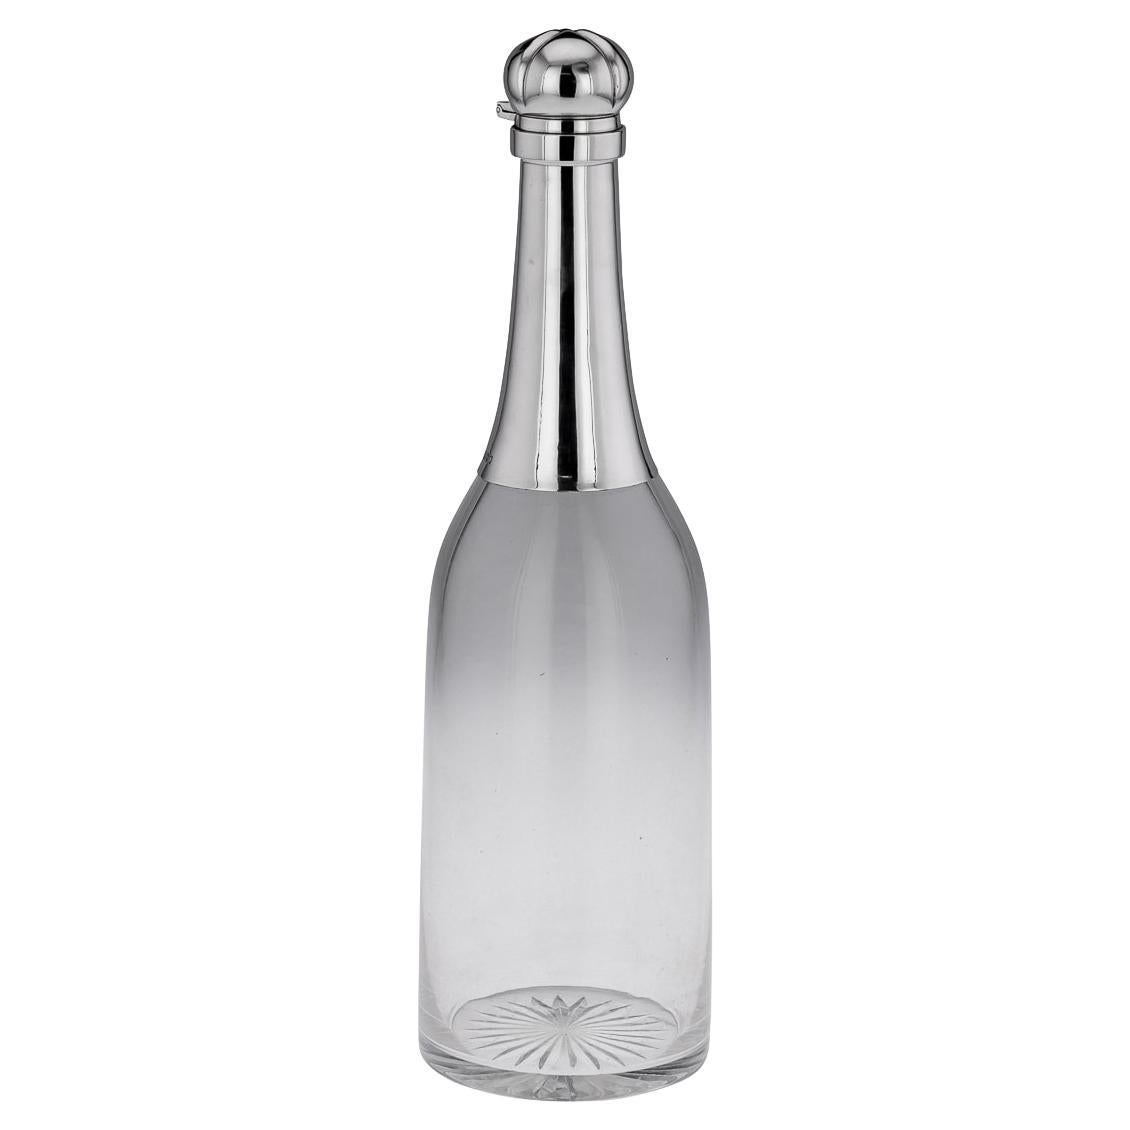 Carafe « Champagne Bottle » victorienne du 19ème siècle en argent massif et verre, vers 1895